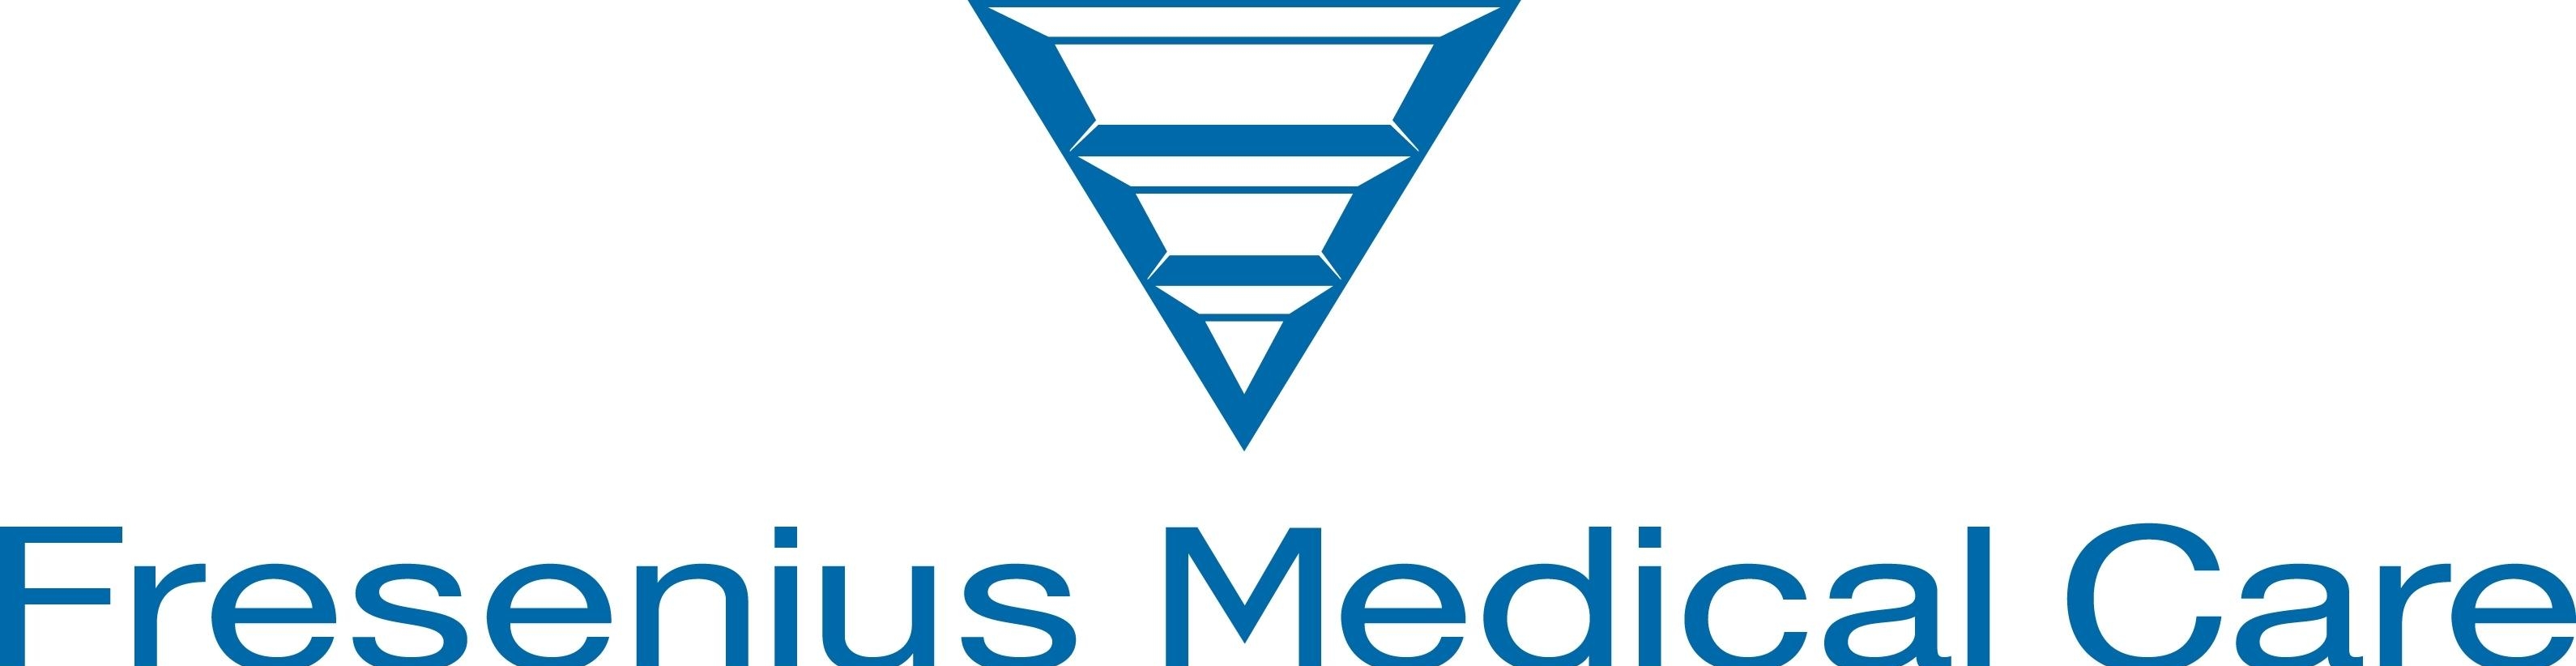 Логотип Fresenius - компании из списка DAX